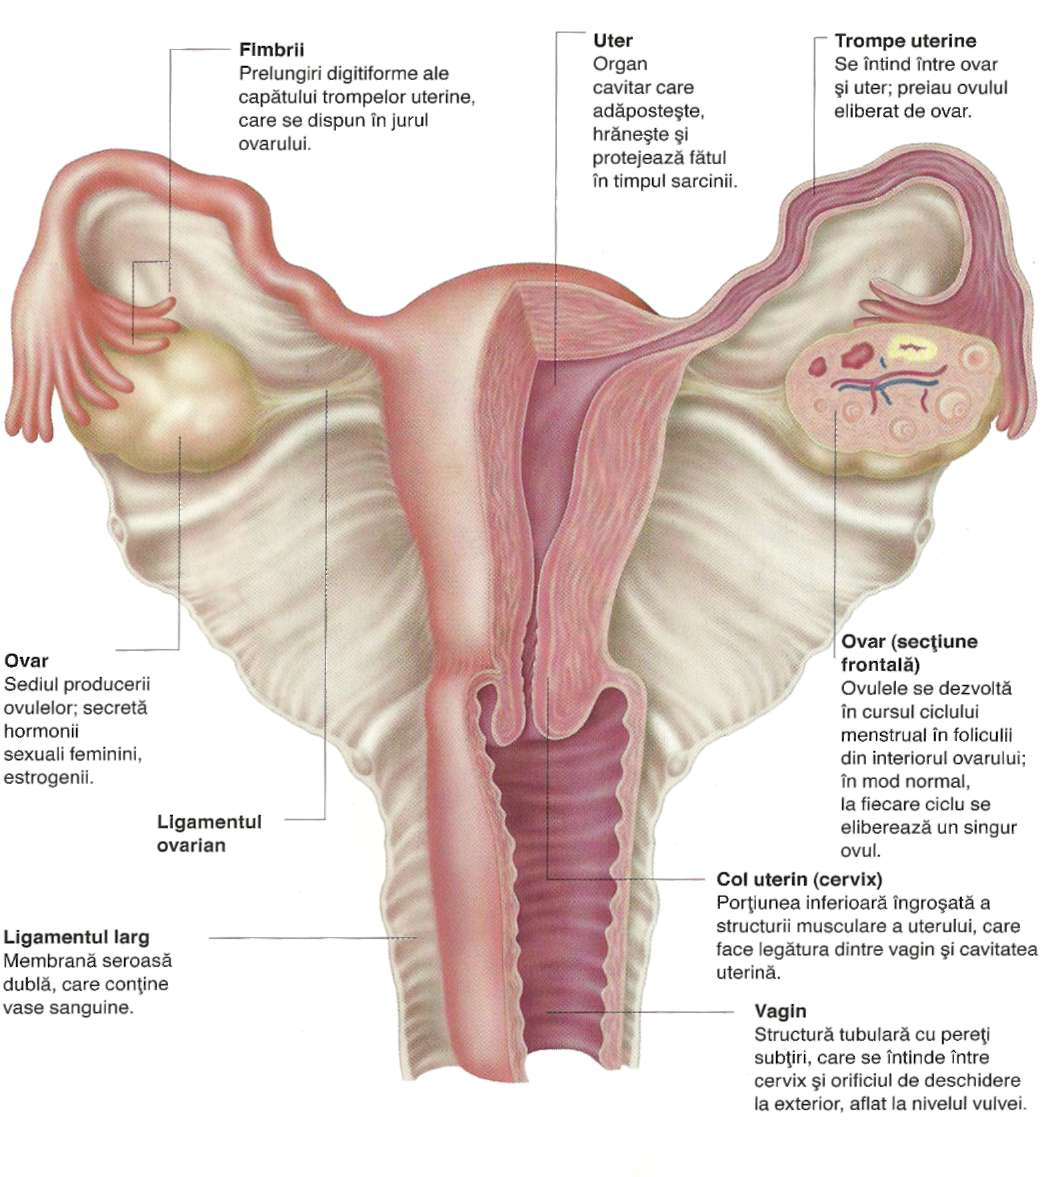 erecția organelor genitale feminine penisul împotriva a ceva se opune